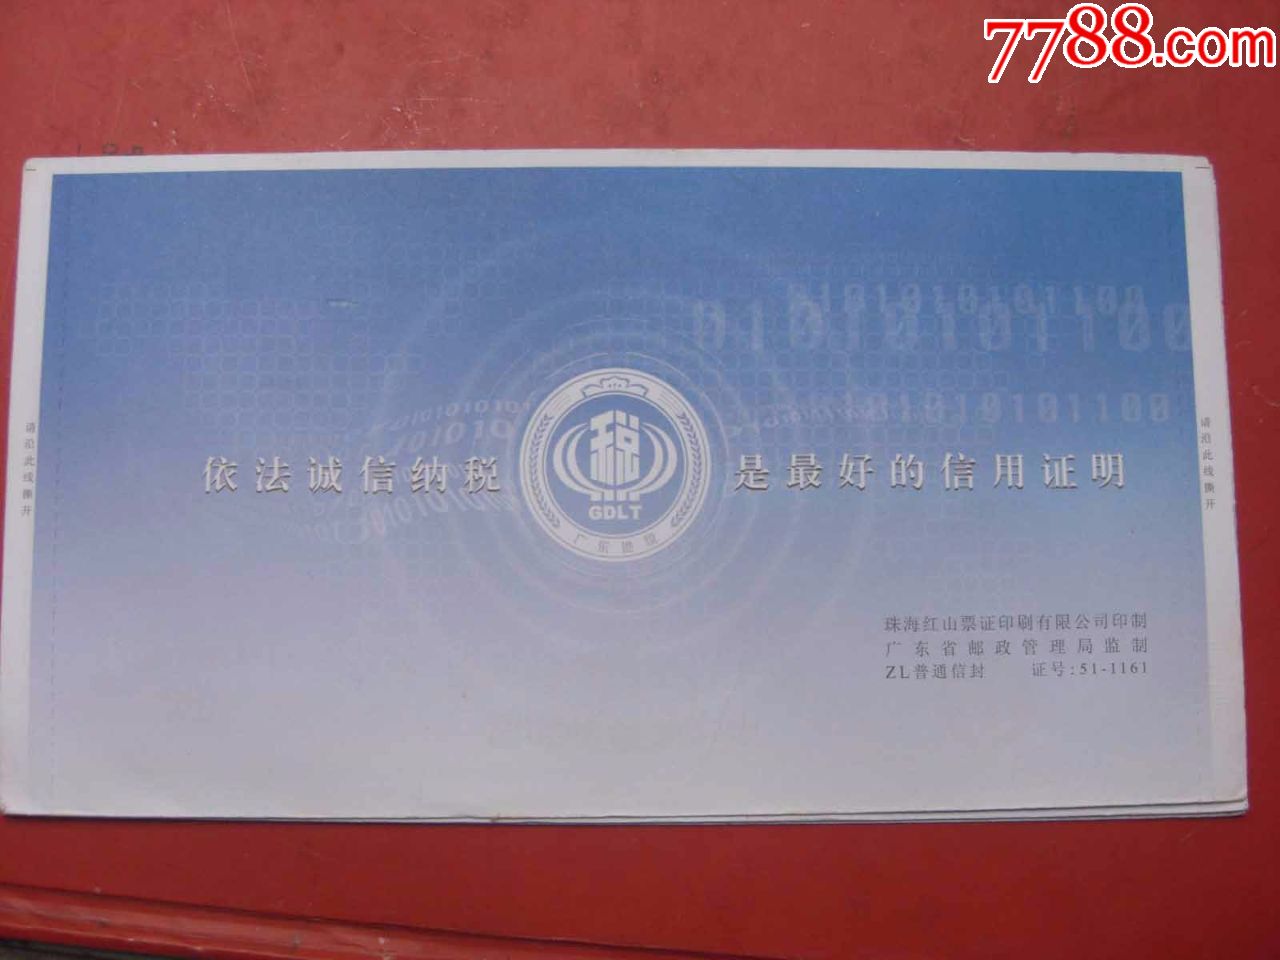 Q385广东省地方税务局专邮09.4.11印邮资机戳